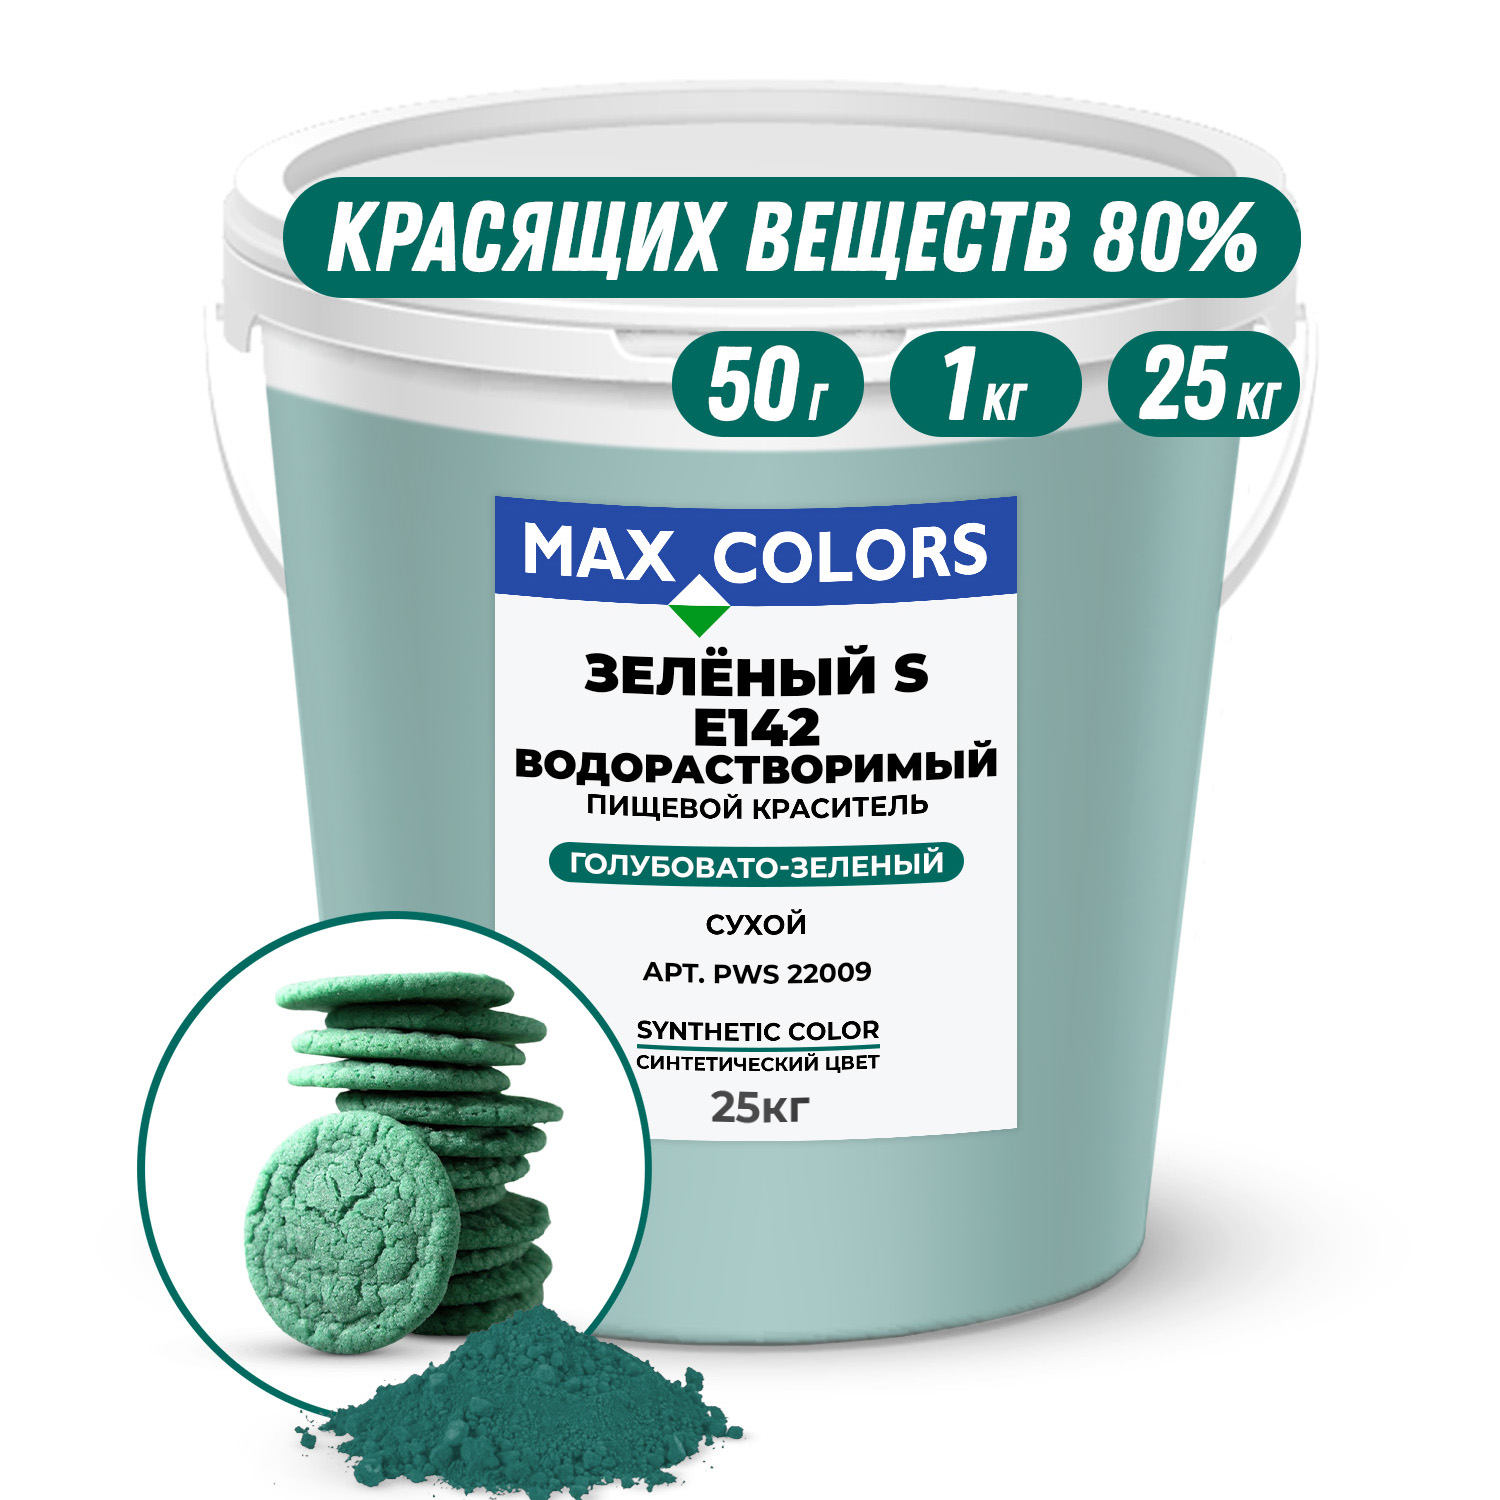 Краситель пищевой Max Color Зеленый S PWS 22009, E142